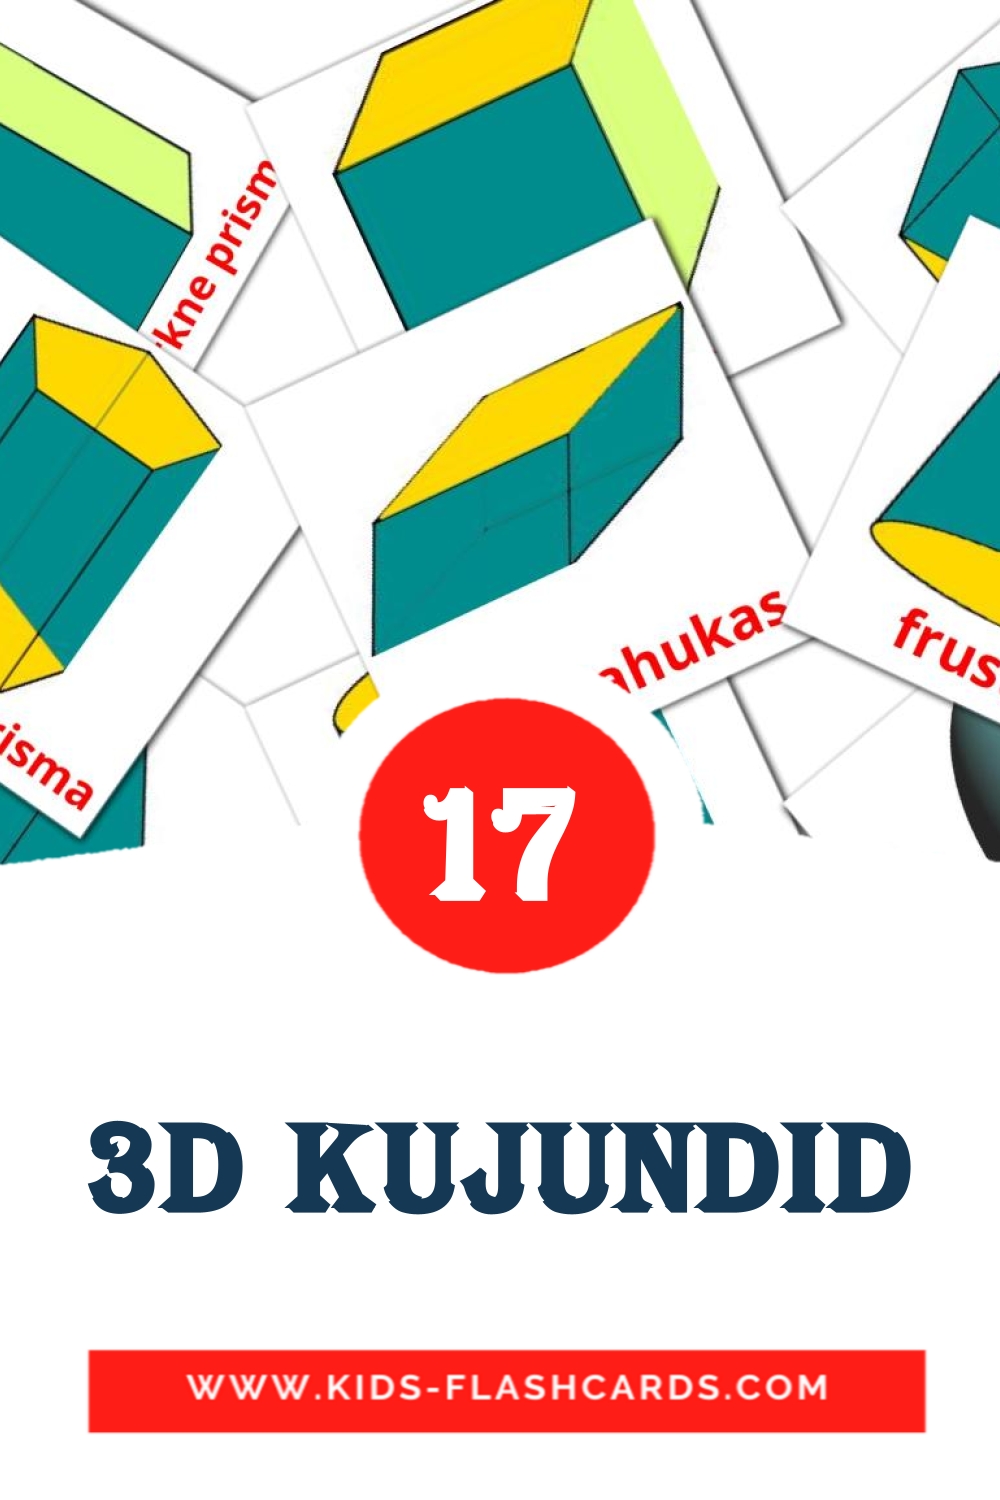 17 3D kujundid Picture Cards for Kindergarden in estonian